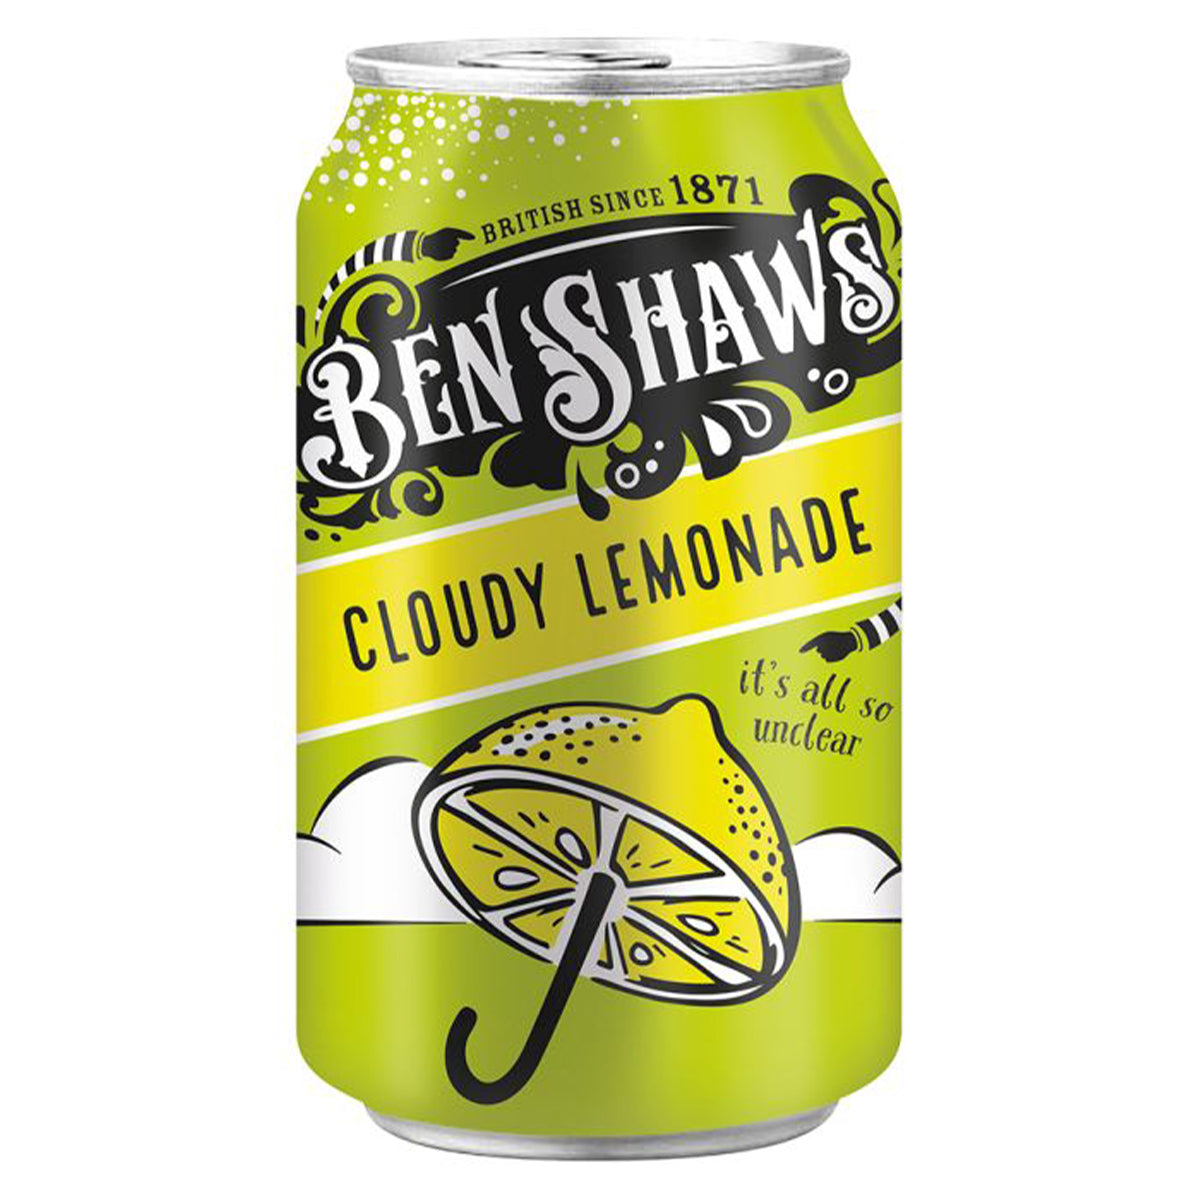 Ben Shaws - Cloudy Lemonade - 330ml can.